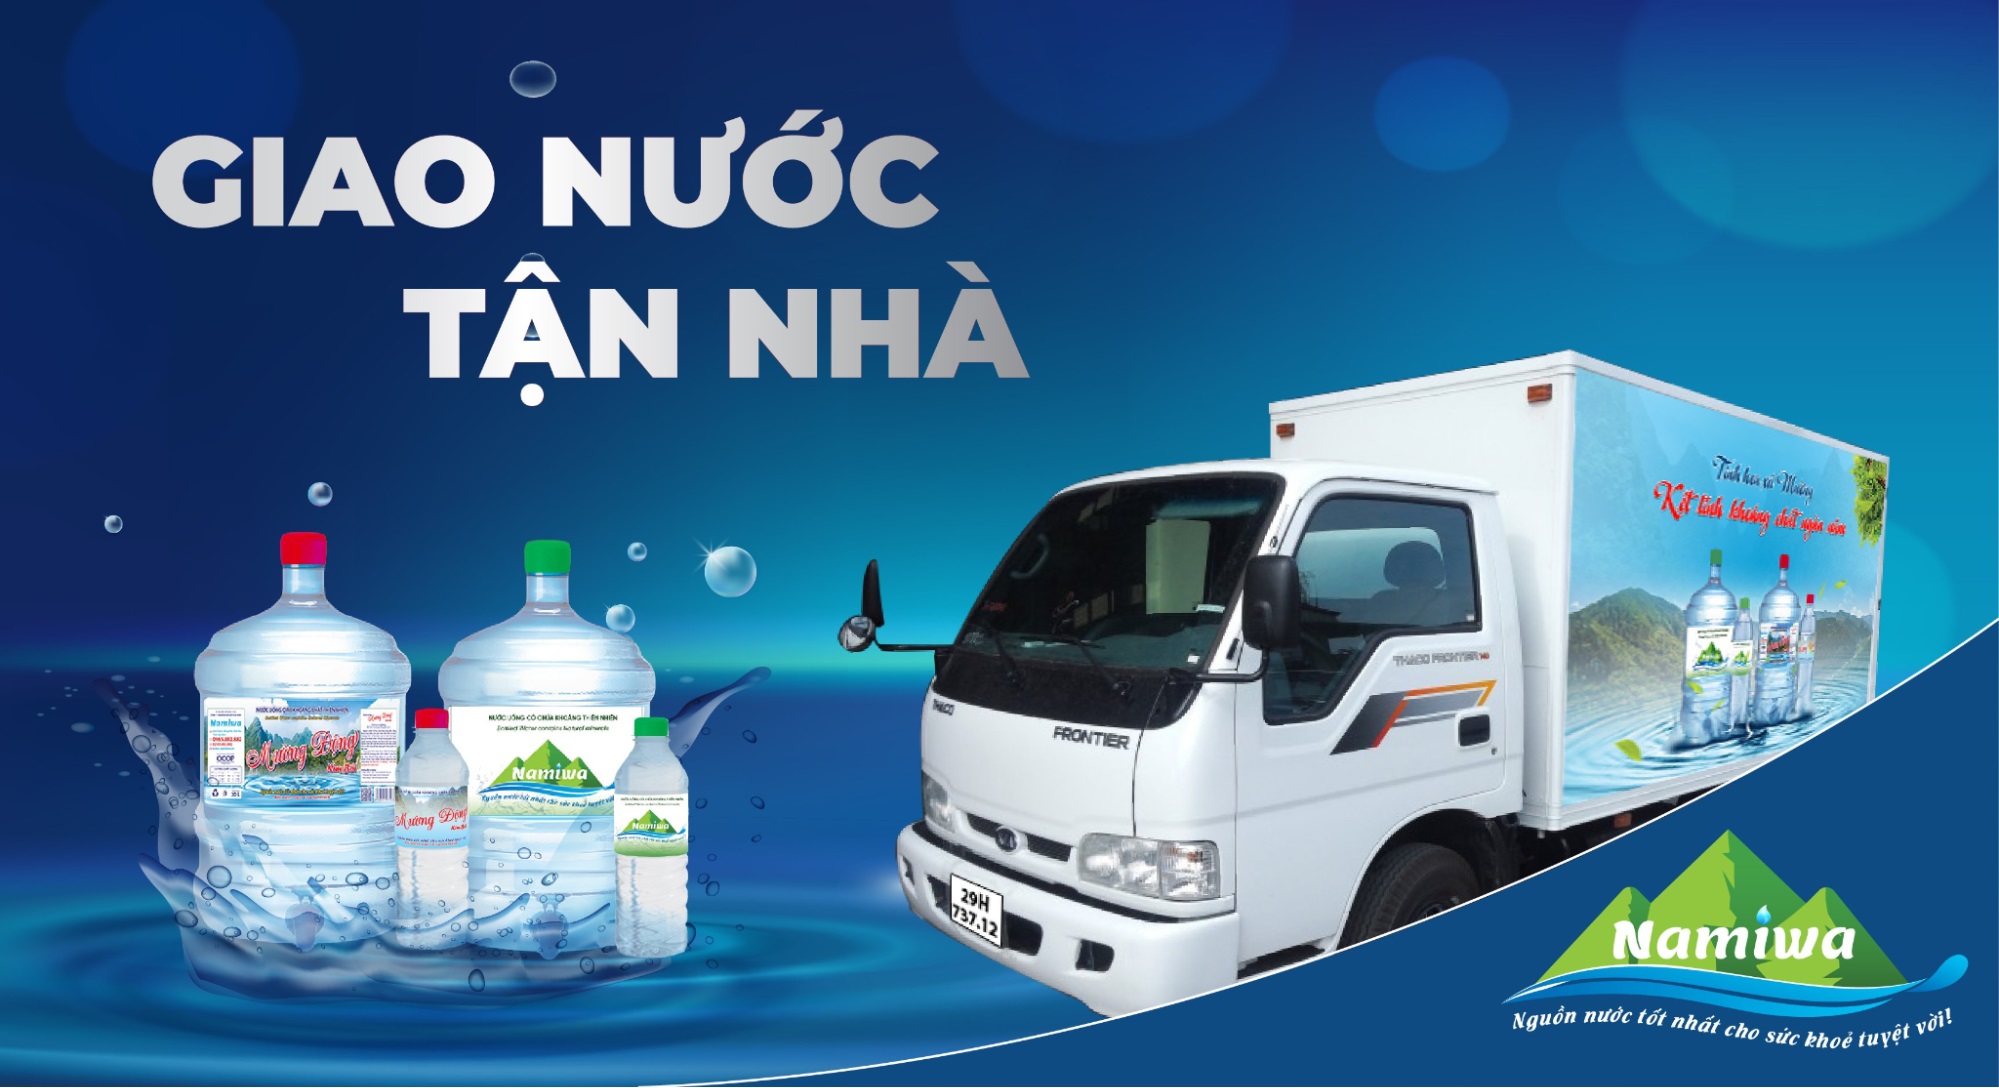 Namiwa sản xuất và cung cấp nước đóng chai, nước đóng bình và giao nước tận nhà để thuận tiện cho khách hàng